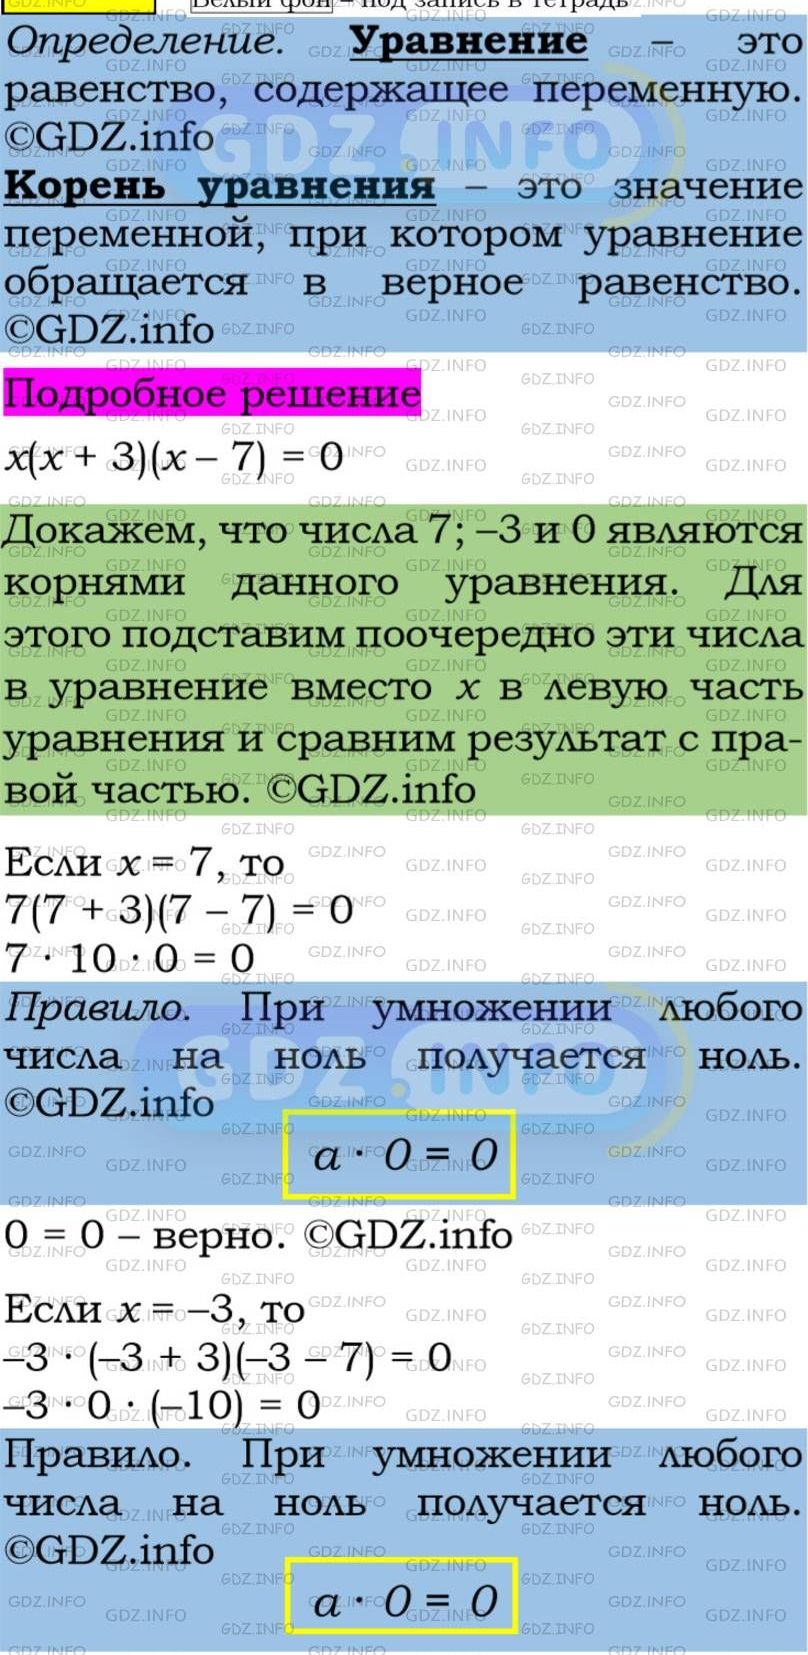 Фото подробного решения: Номер задания №133 из ГДЗ по Алгебре 7 класс: Макарычев Ю.Н.